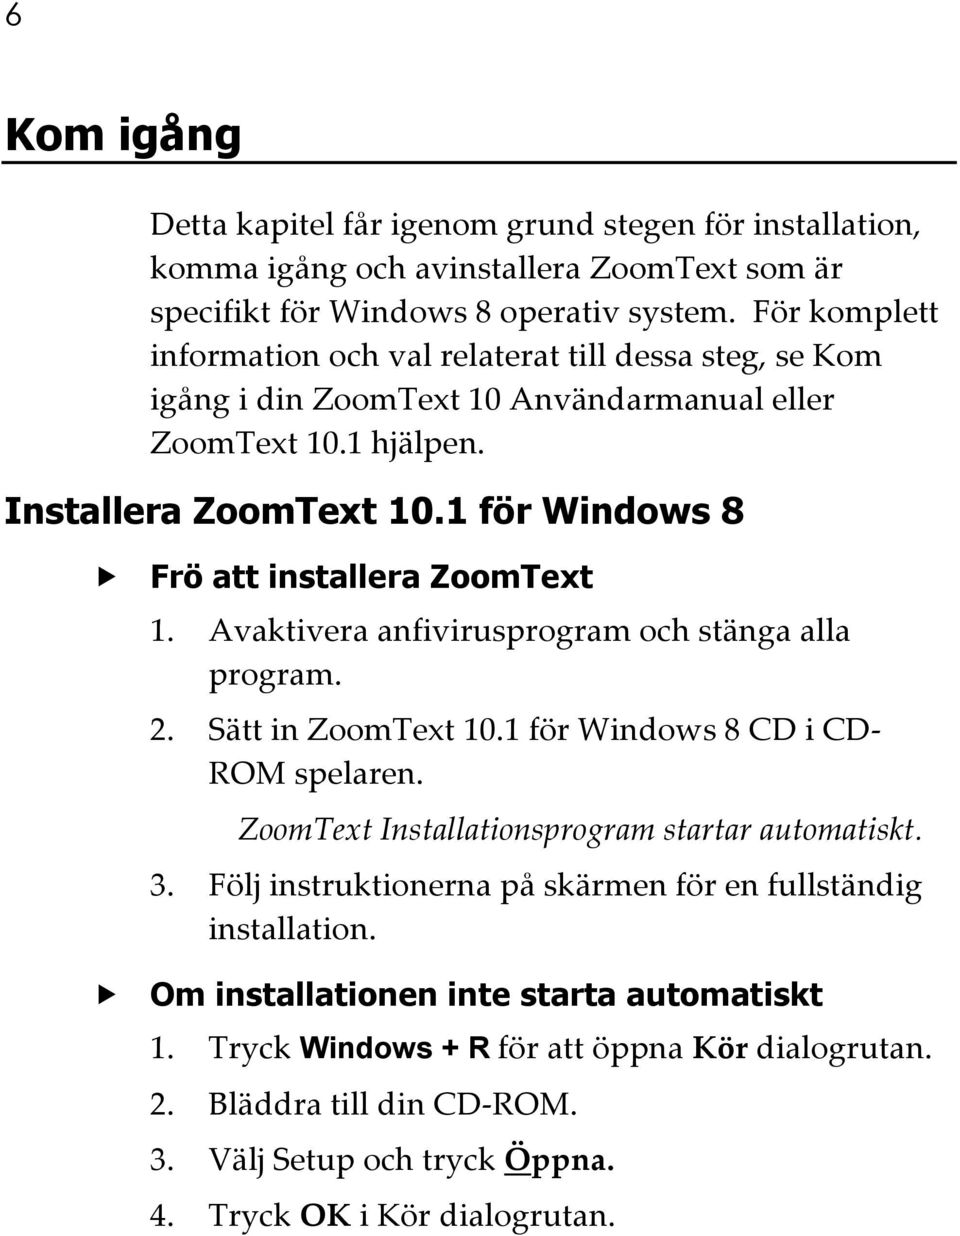 1 för Windows 8 Frö att installera ZoomText 1. Avaktivera anfivirusprogram och stänga alla program. 2. Sätt in ZoomText 10.1 för Windows 8 CD i CD- ROM spelaren.